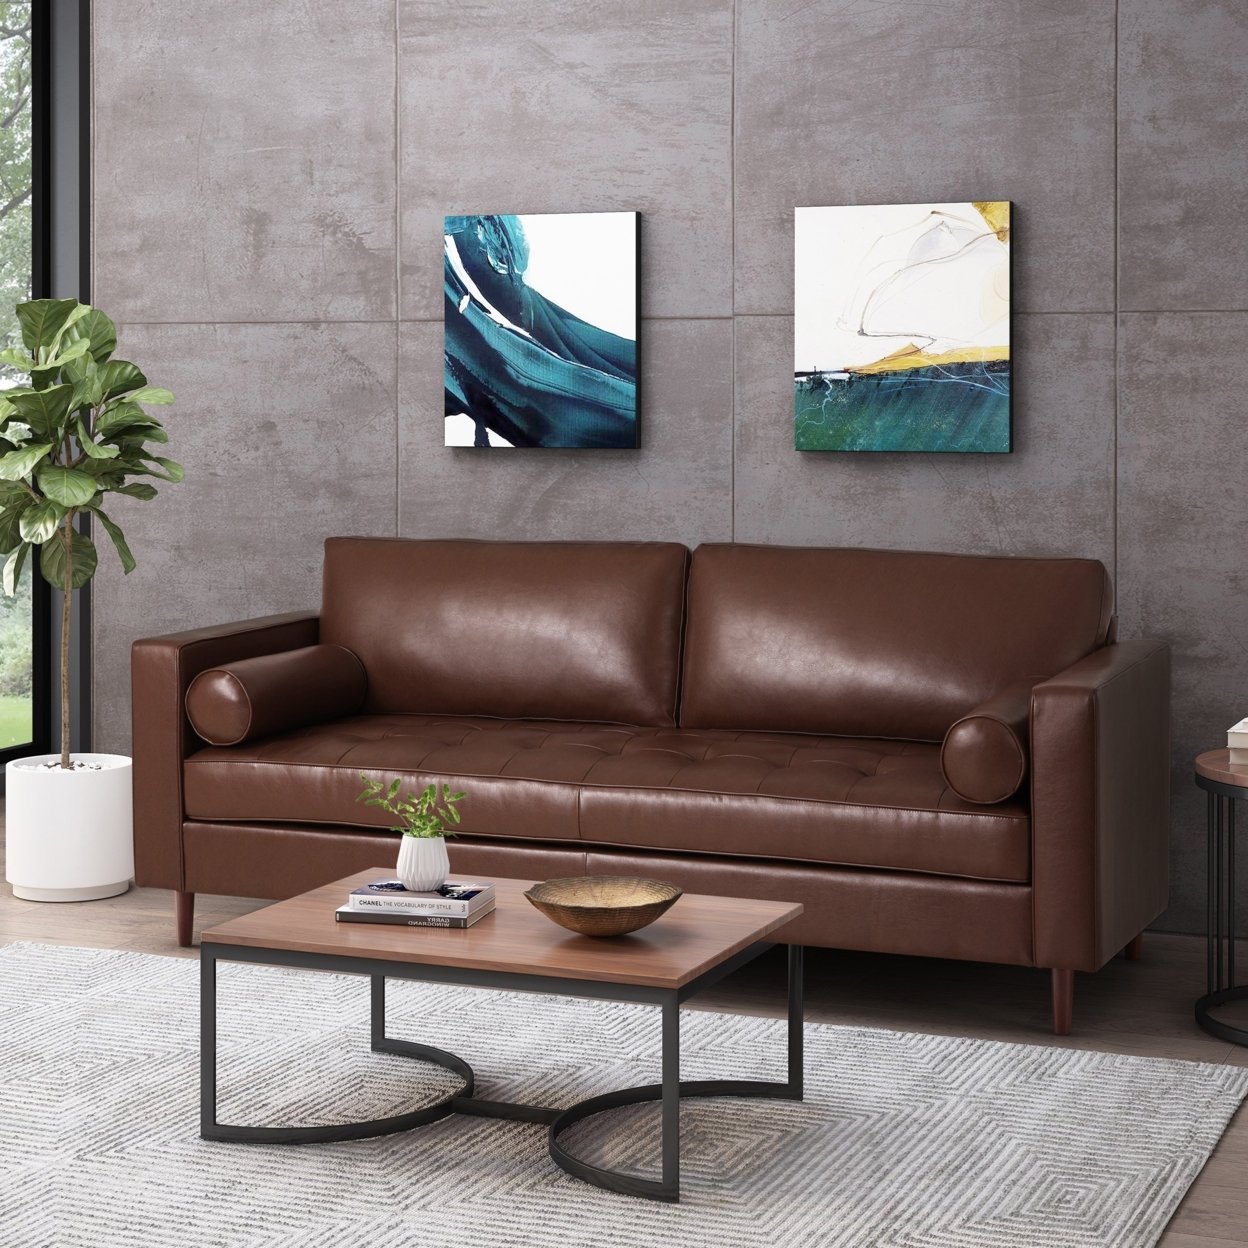 Hixon Contemporary Tufted 3 Seater Sofa - Espresso/dark Brown